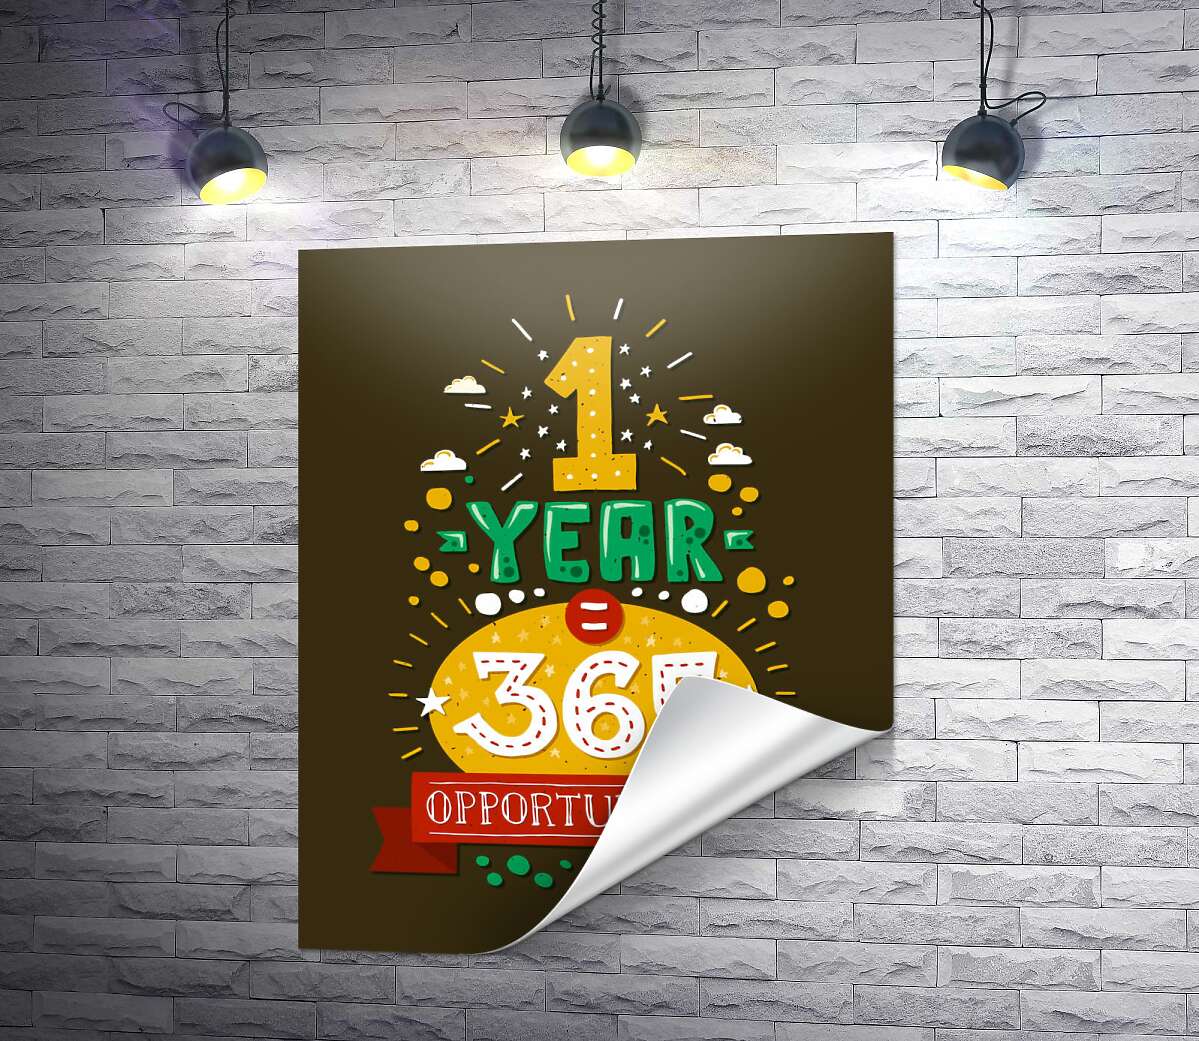 печать Мотивационная надпись: "1 year = 365 opportunities"